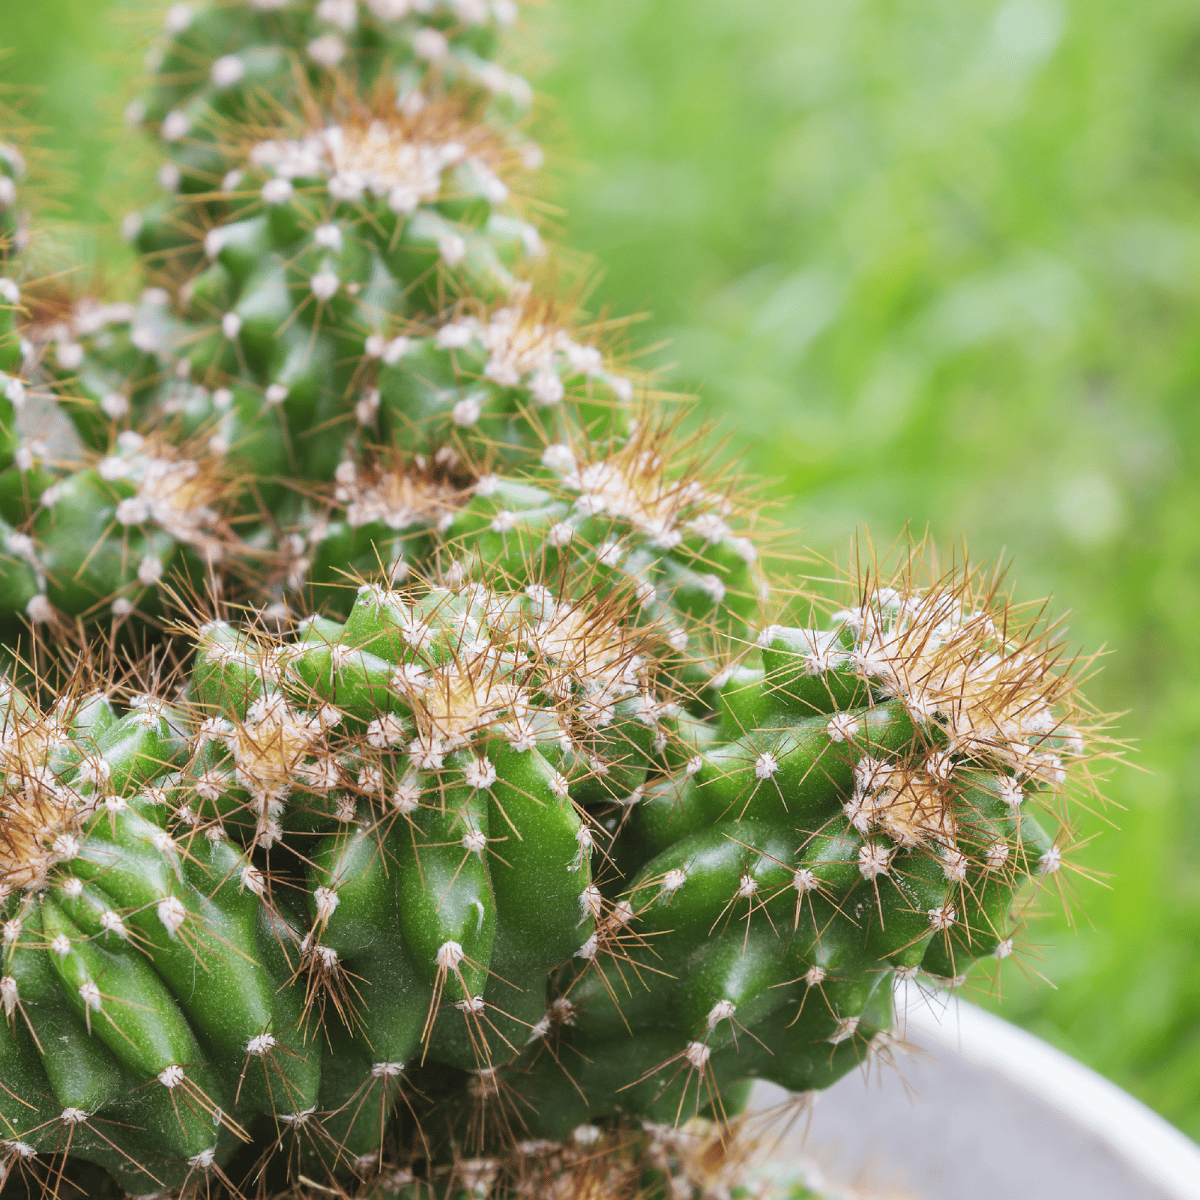 Brawn Cactus Live Plant / Cereus Peruvianus Monstruosus Oscuros Cacti